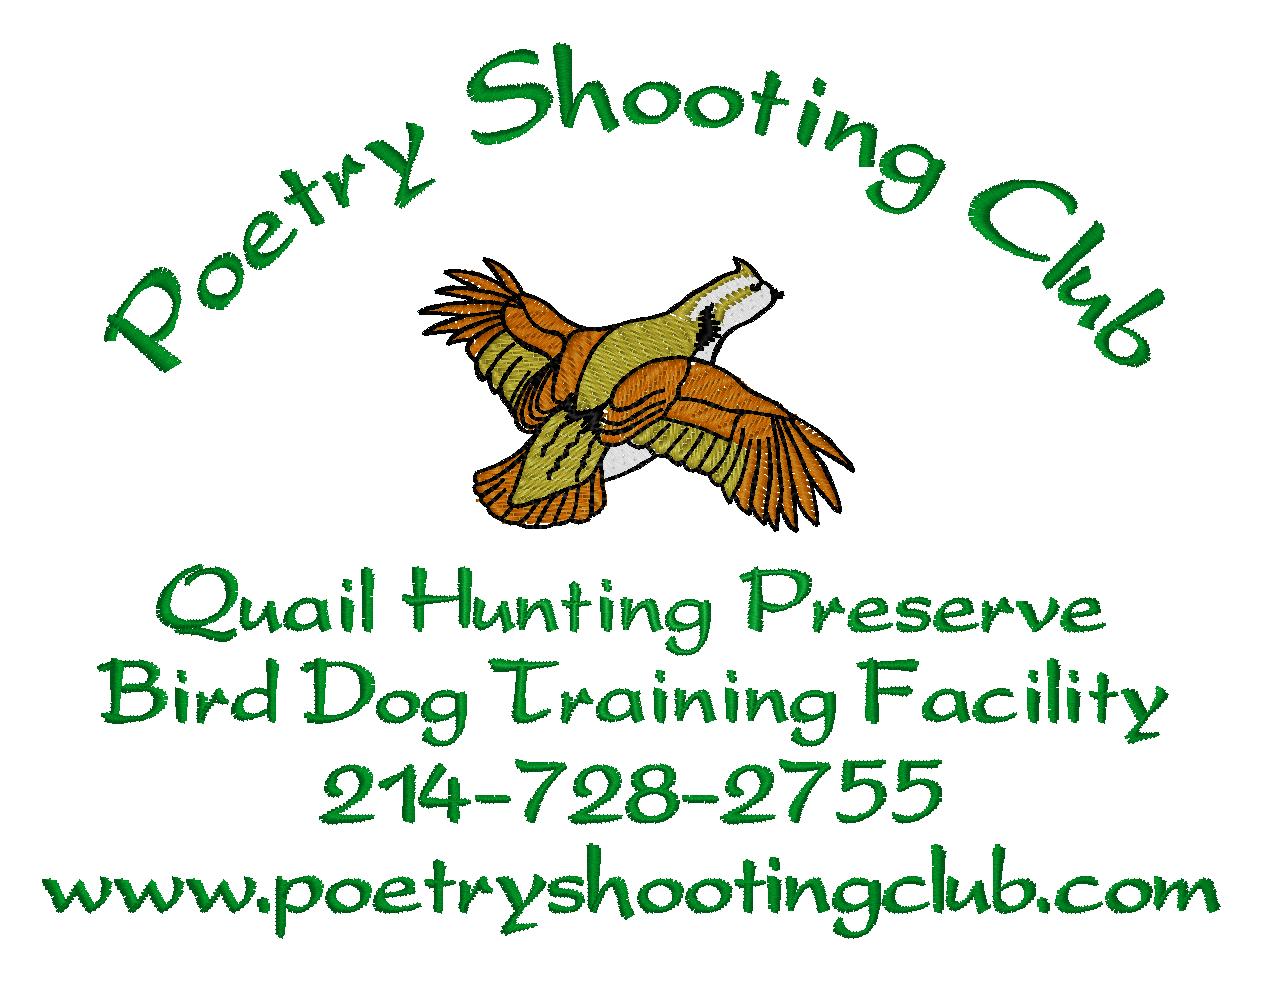 Poetry Shooting Club